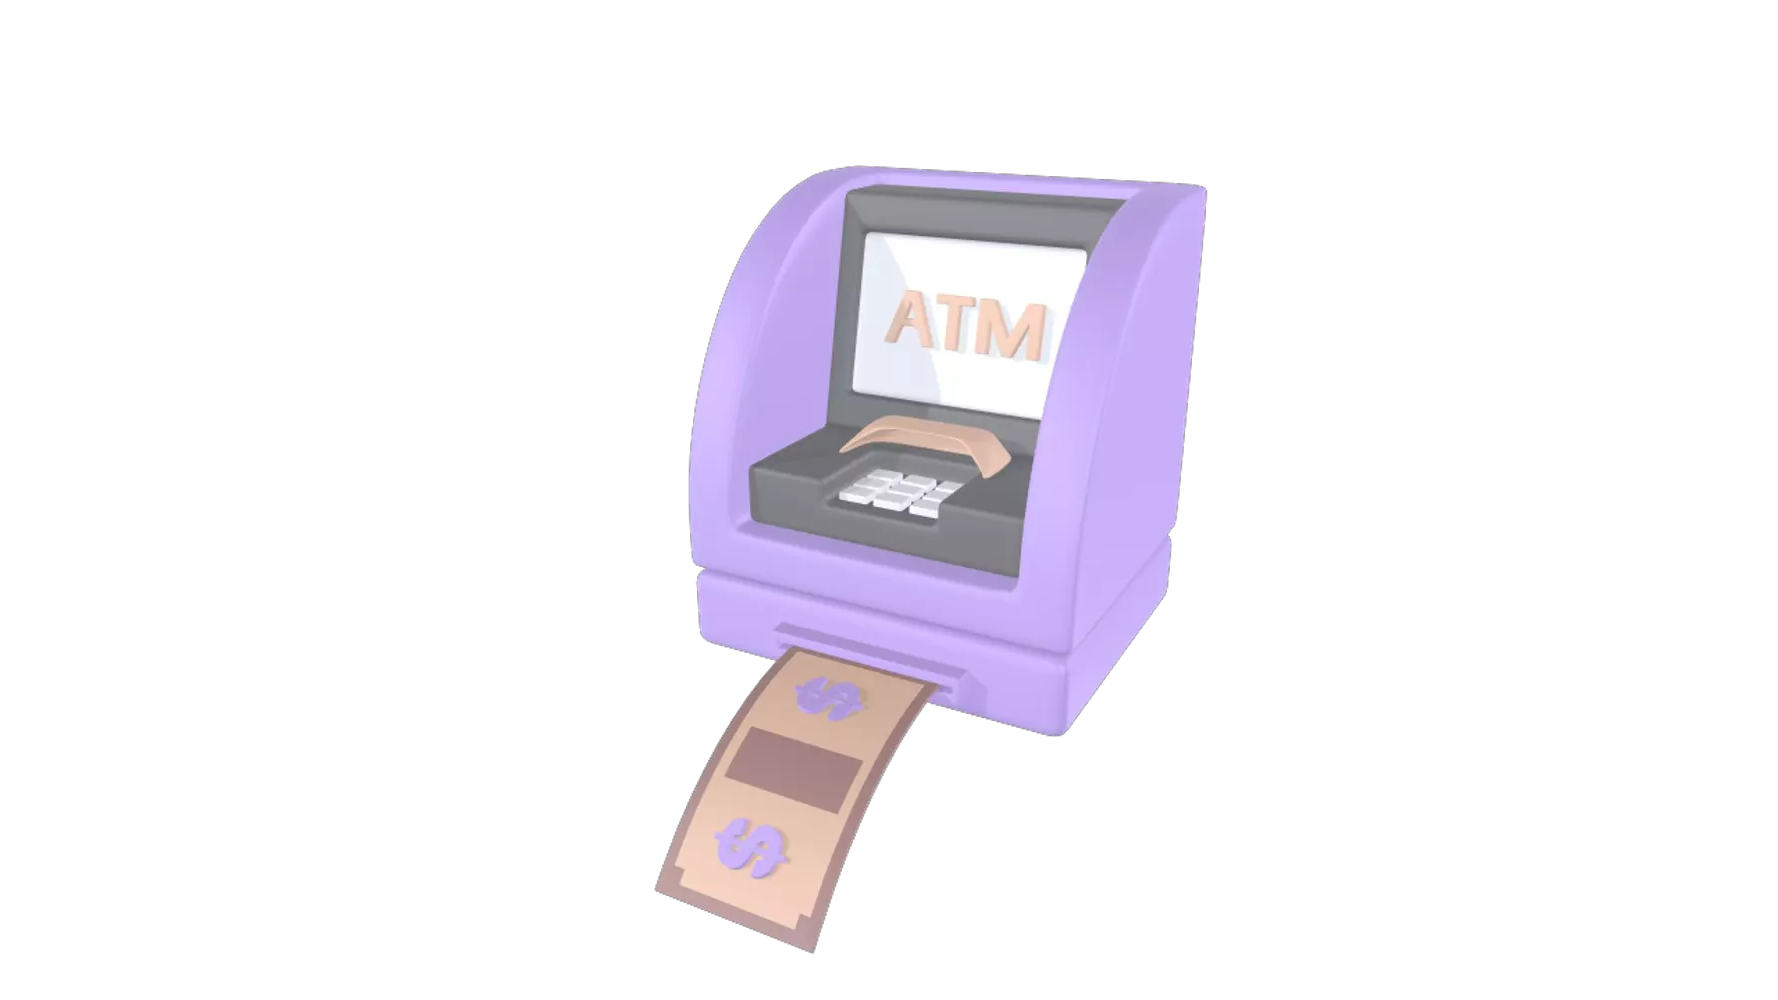 ATM Machine 3D Graphic